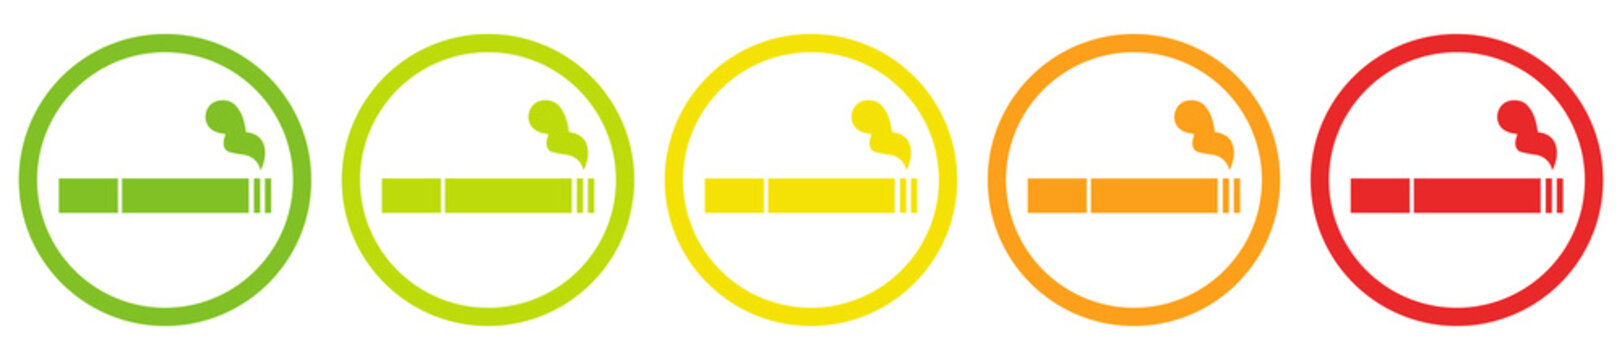 Raucher fünf Phasen erlaubt bis verboten